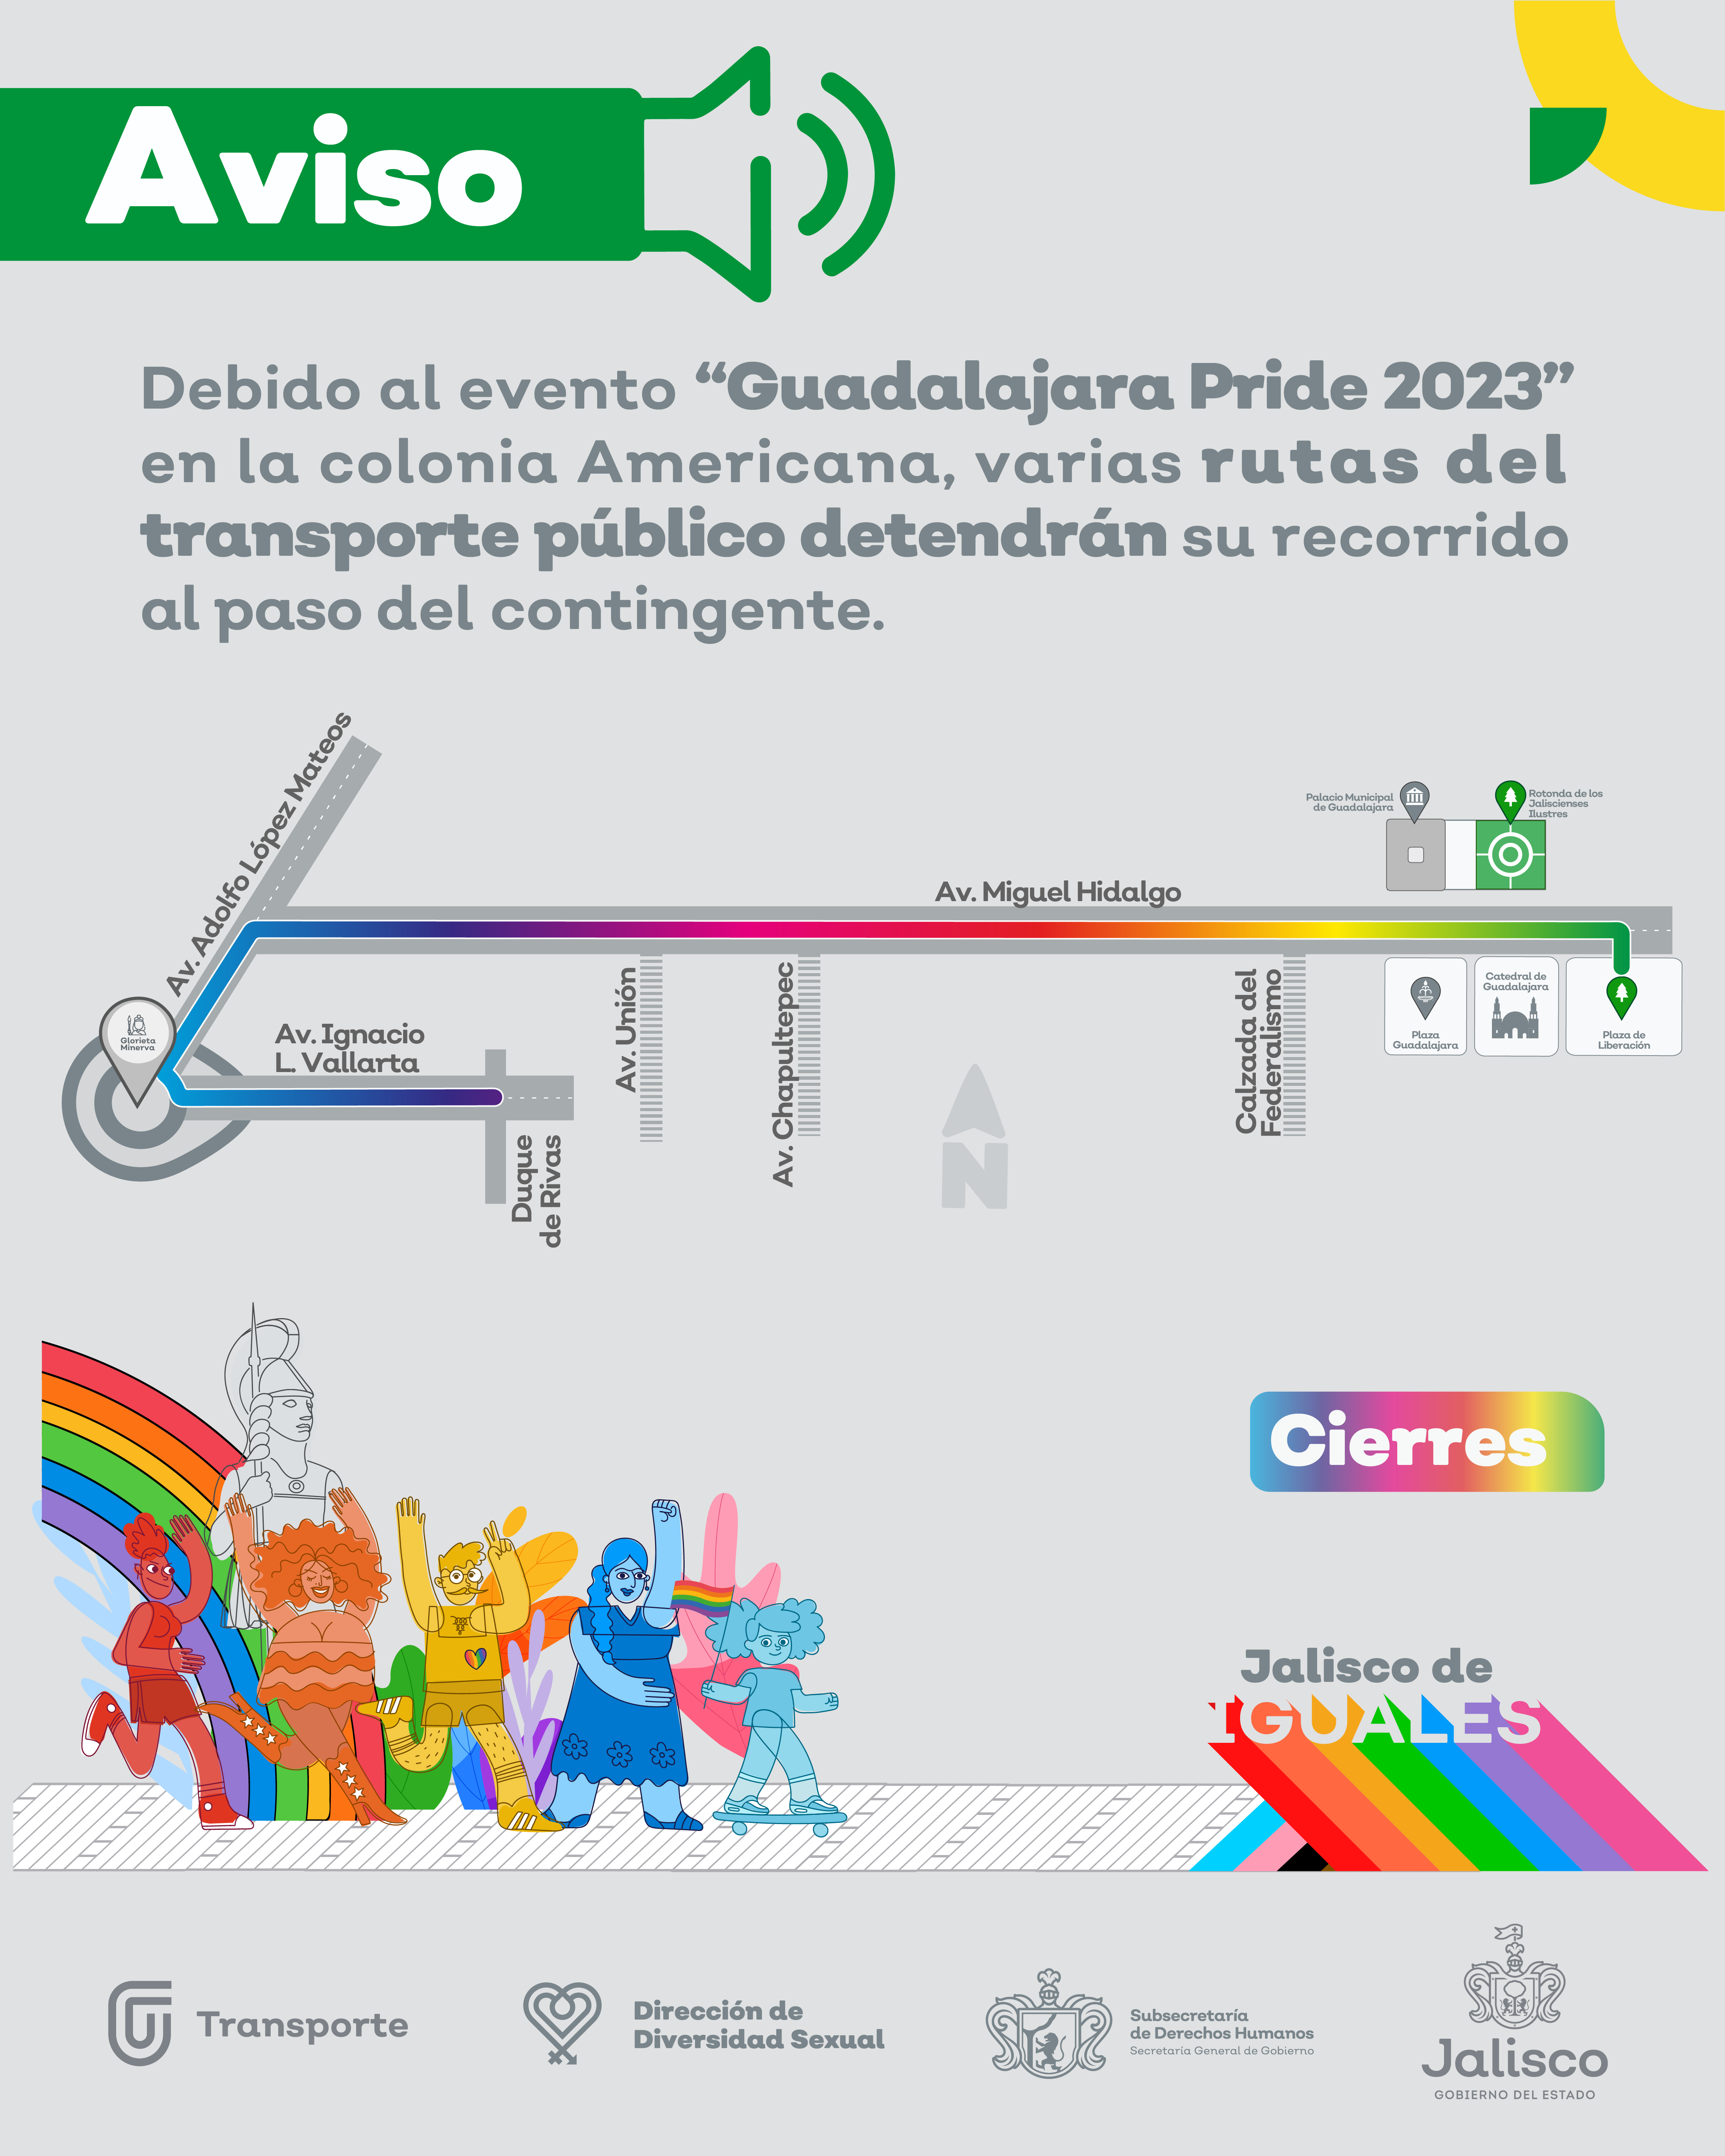 Debido al "Guadalajara Pride 2023" varias rutas del transporte público en Guadalajara detendrán su recorrido al paso del contingente